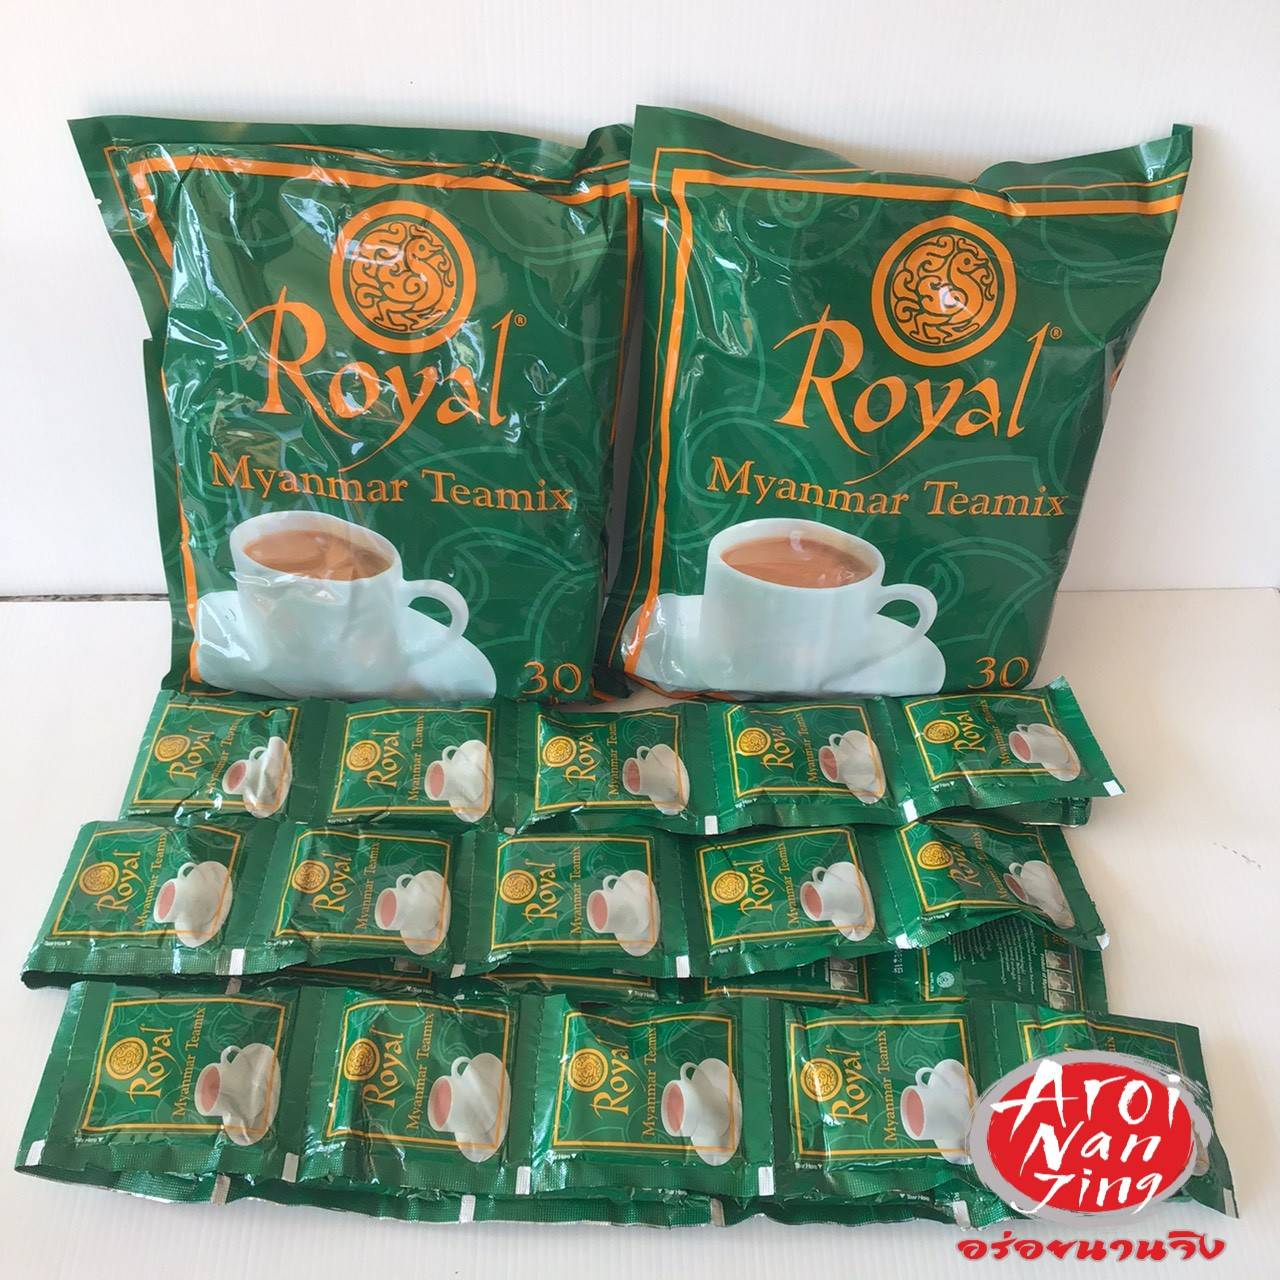 🚛ส่งฟรี! ชาพม่า 2 Packs  ☕☕  ชารอยัล ชา ชานม Royal Myanmar teamix 3in1 ขนาดแพ็คคู่ 60 ซอง ( ขายรวม 2 แพ็ค ) : Aroi Nan Jing